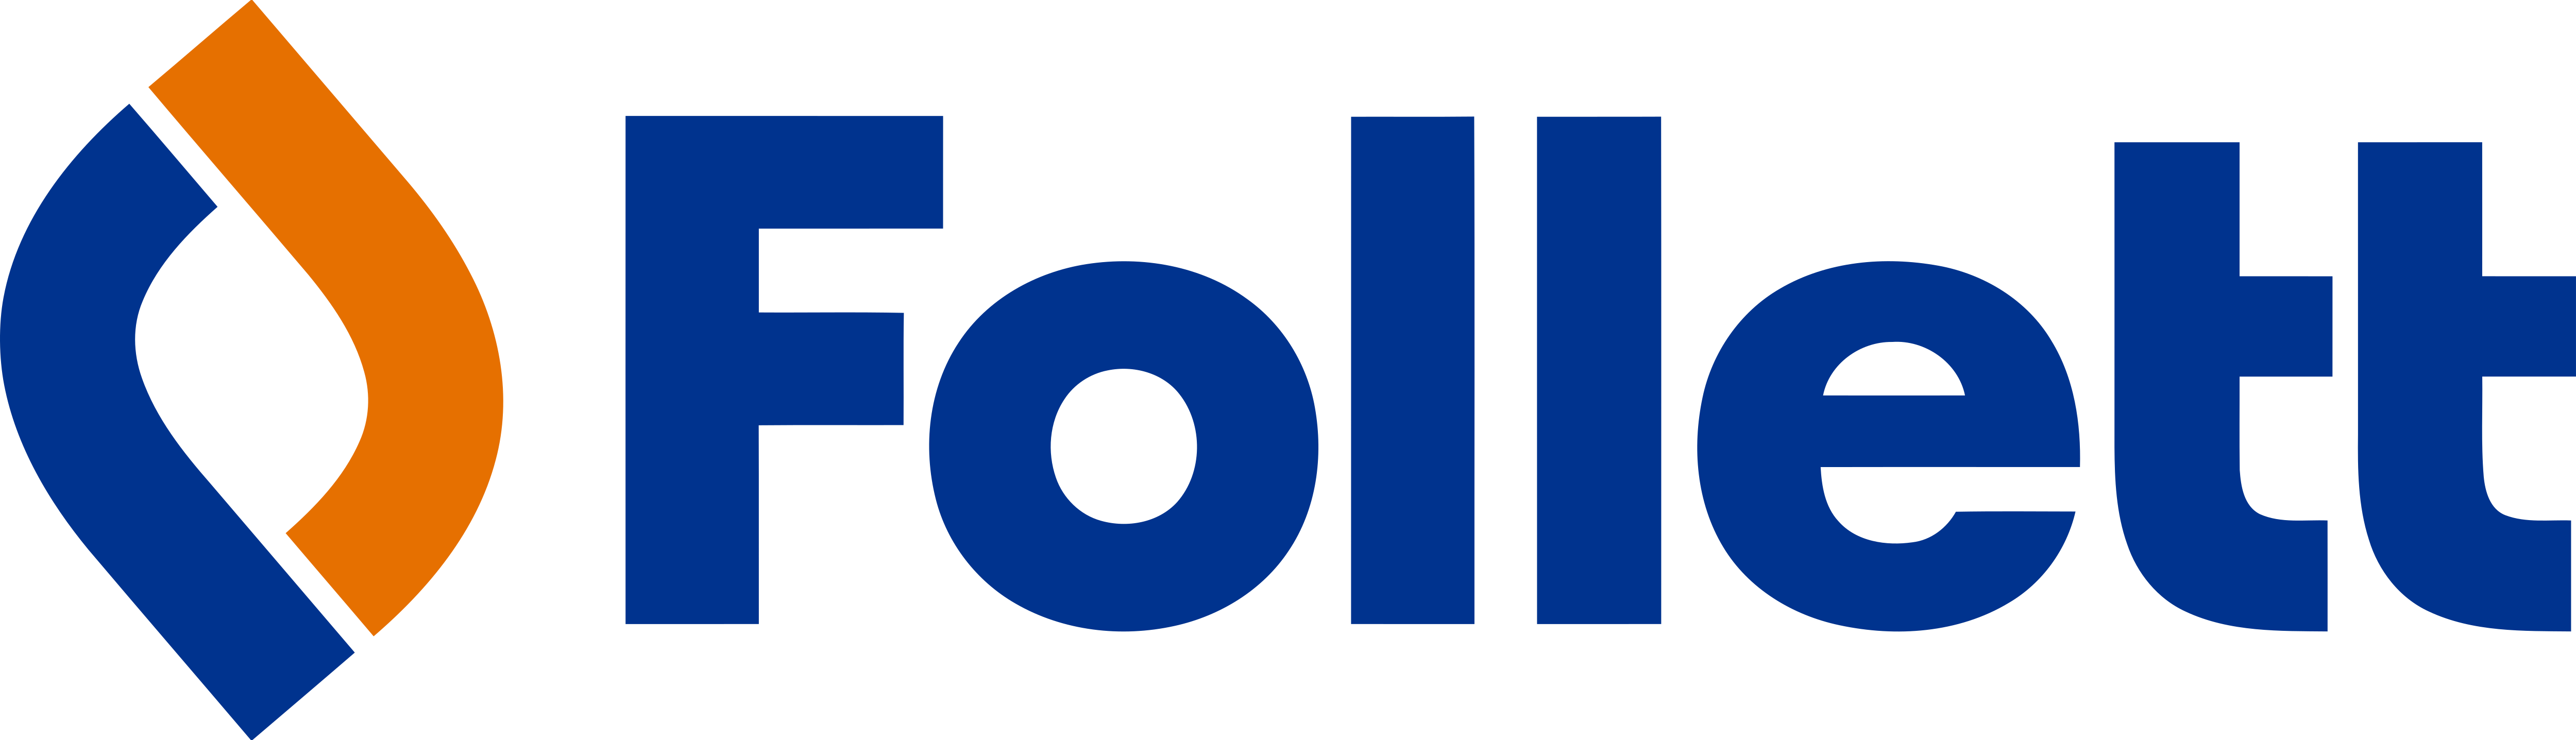 Follett_Corporation_Logo